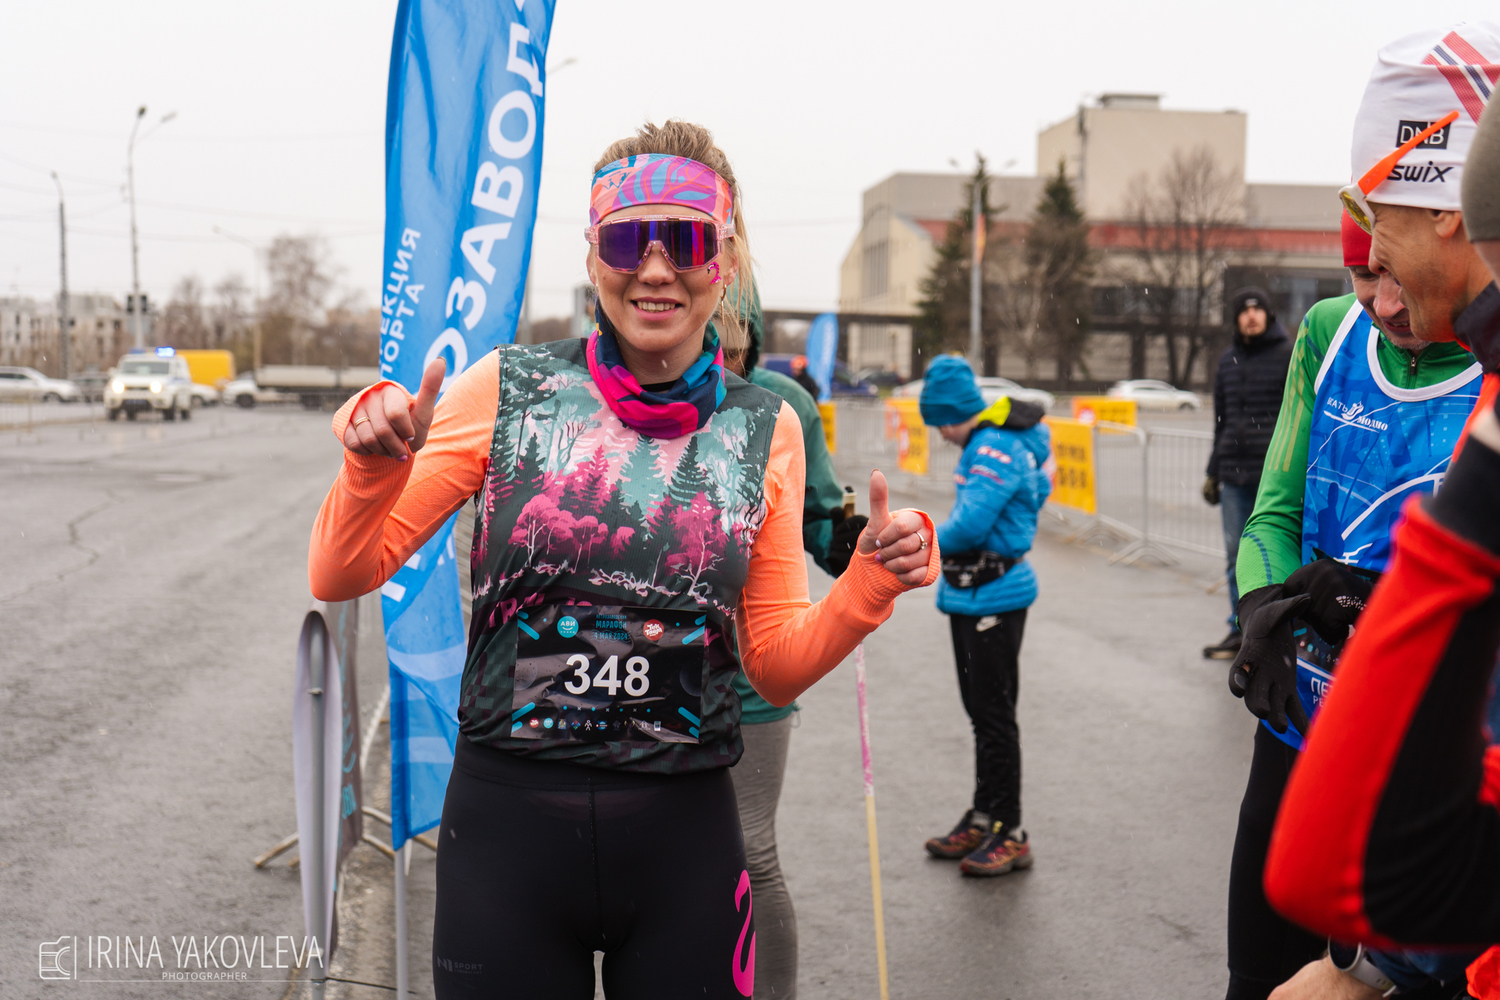 Дождь не помешал жителям Петрозаводска пробежать марафон с улыбкой